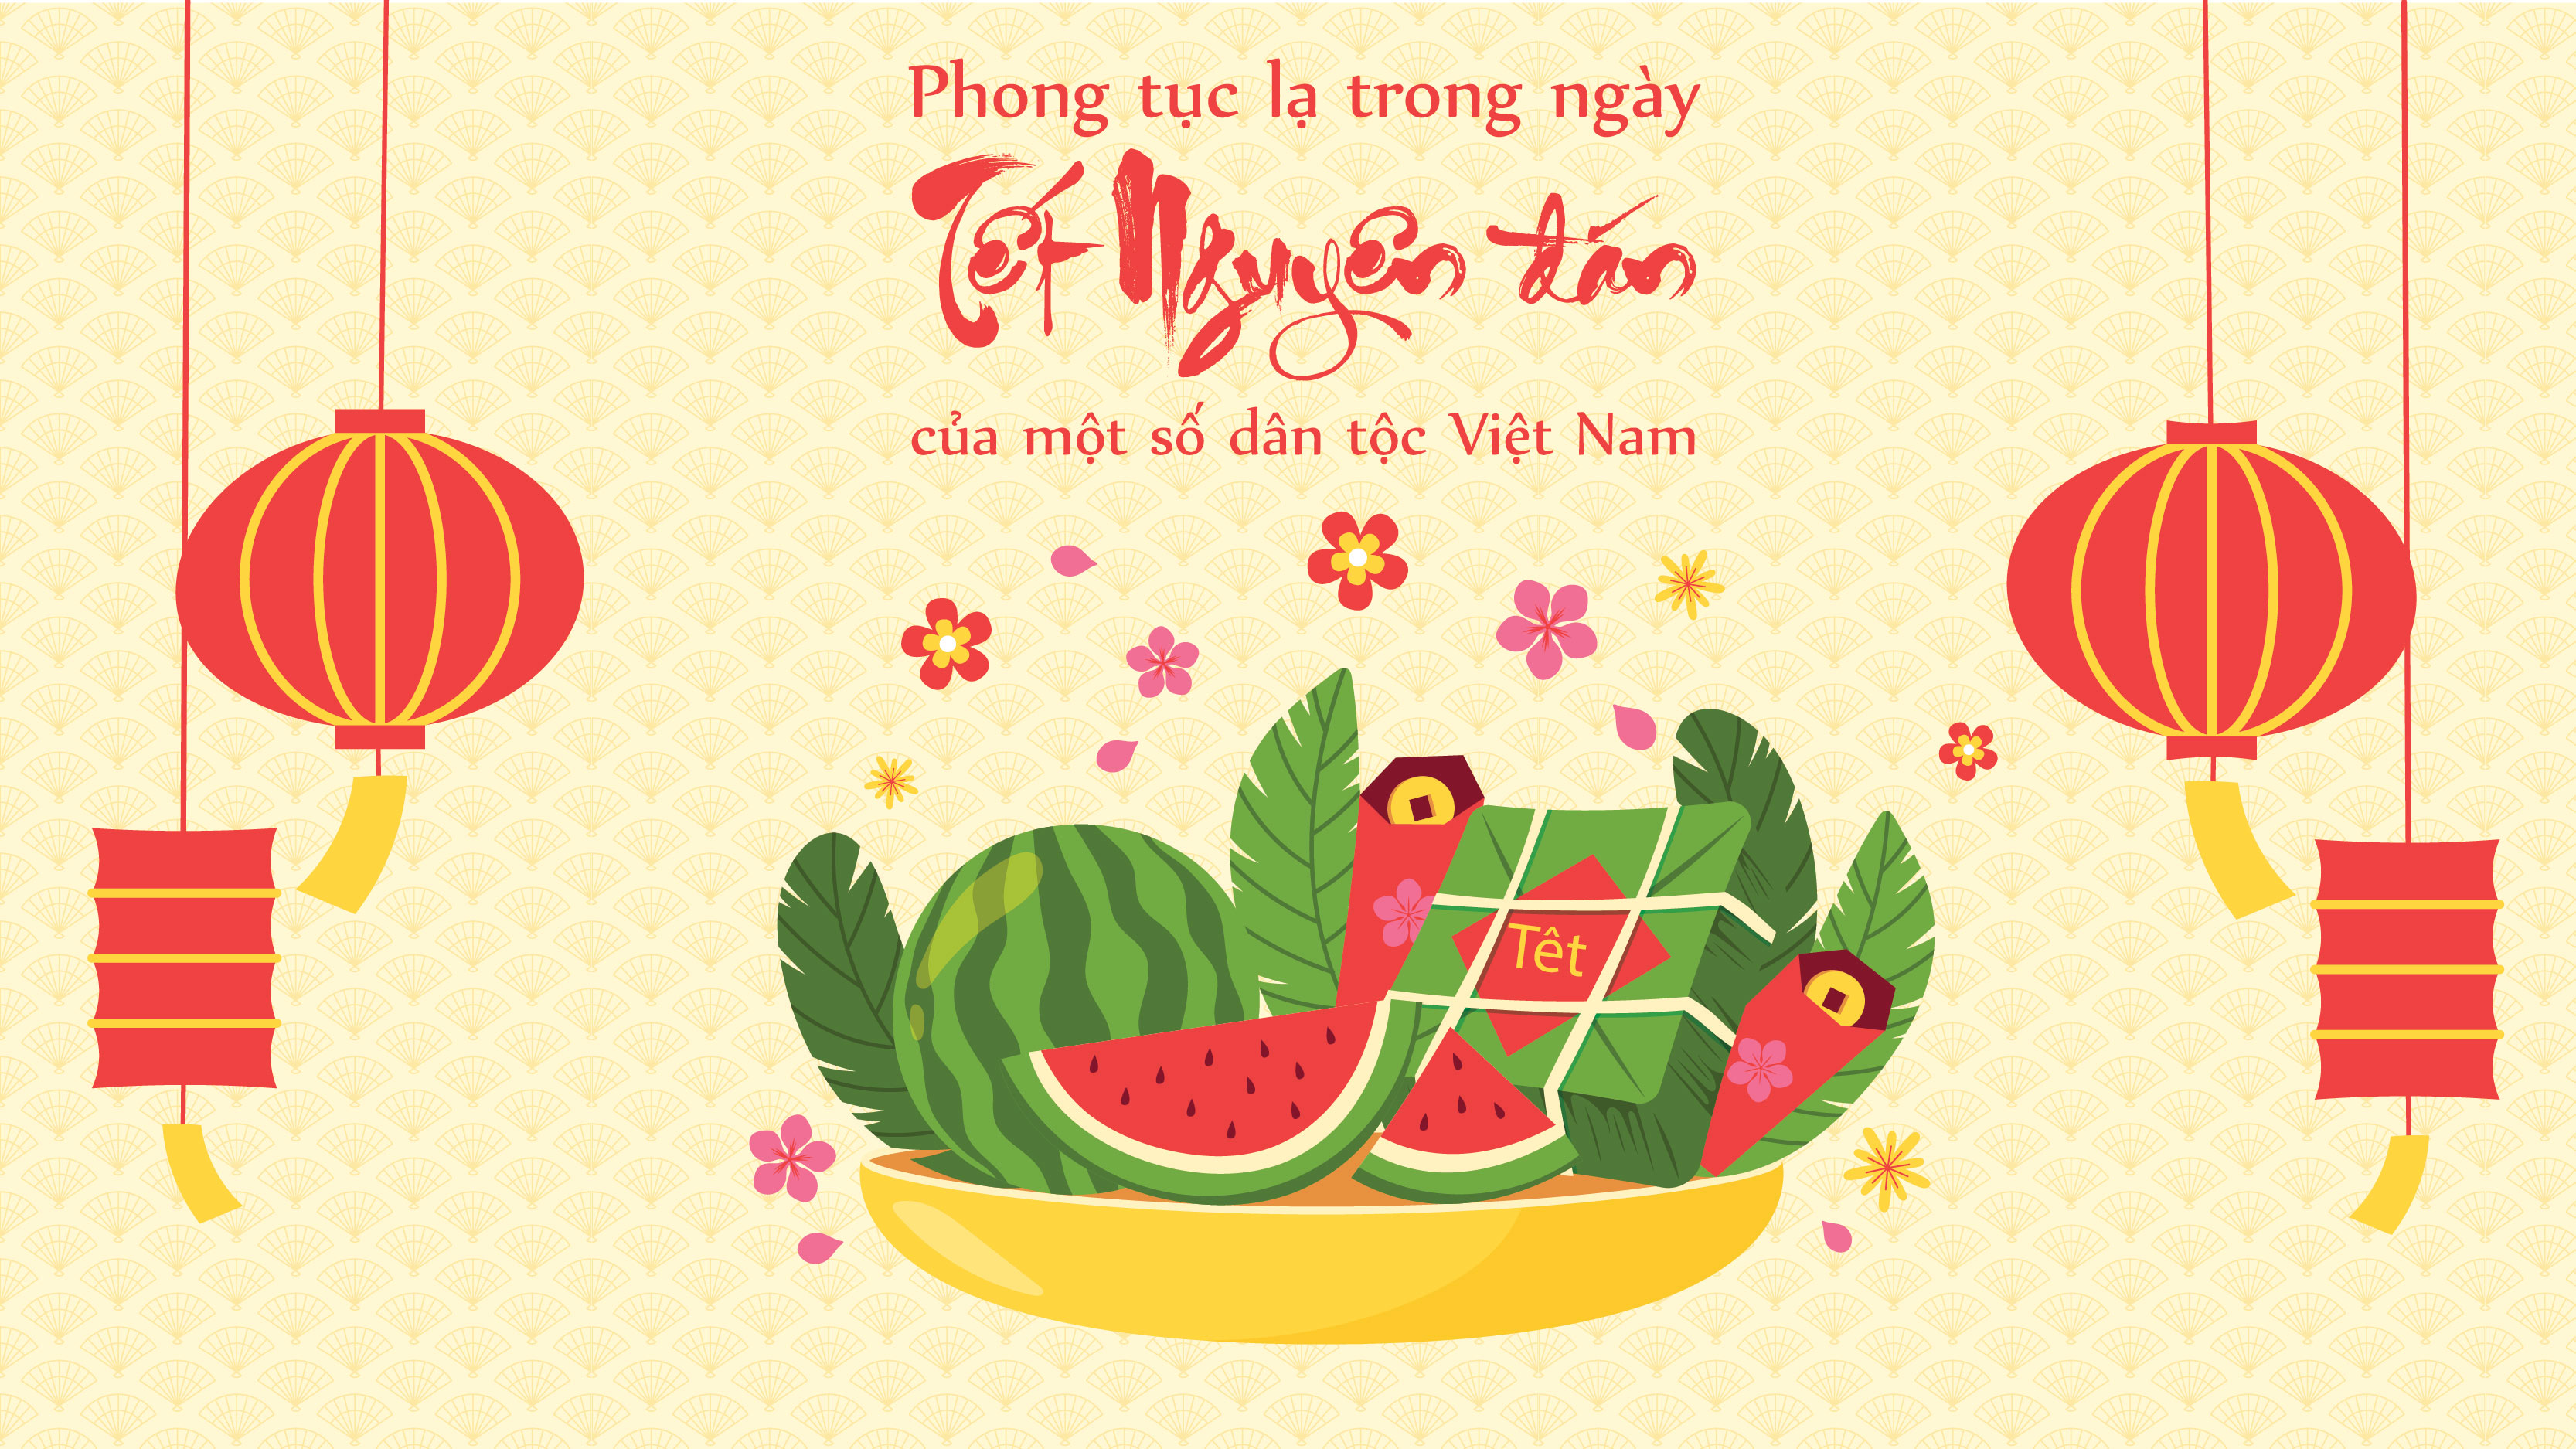 Phong tục lạ trong ngày Tết Nguyên đán của một số dân tộc Việt Nam - 1